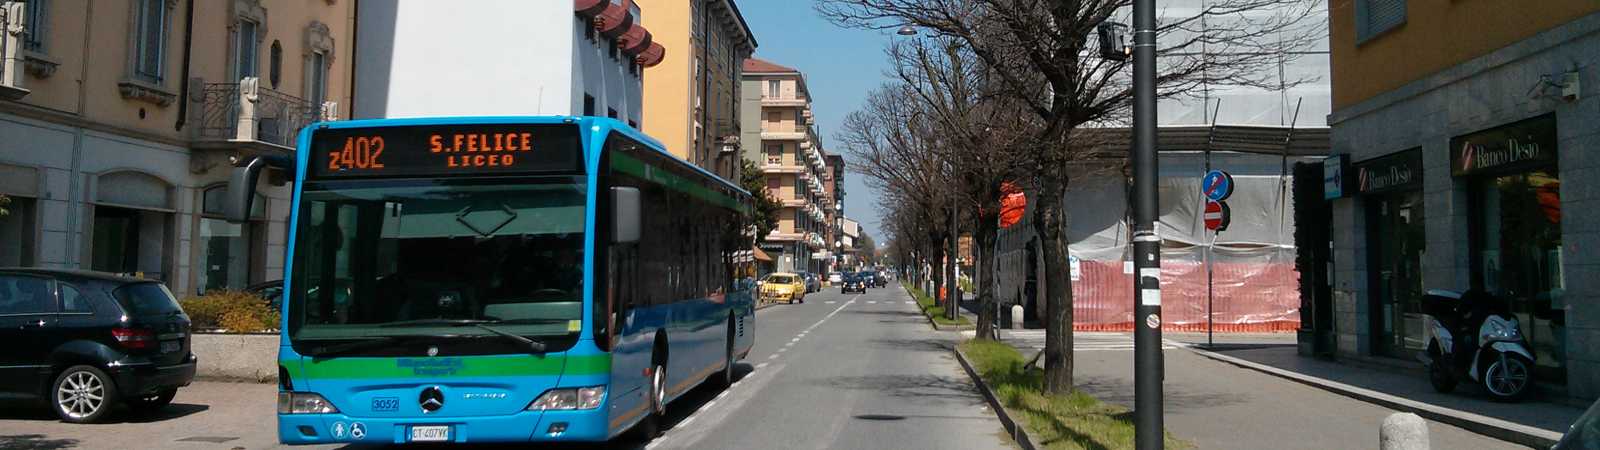 Pavia e Provincia: ricerchiamo rilevatori per indagini sulla mobilità dei passeggeri del trasporto pubblico urbano ed extraurbano